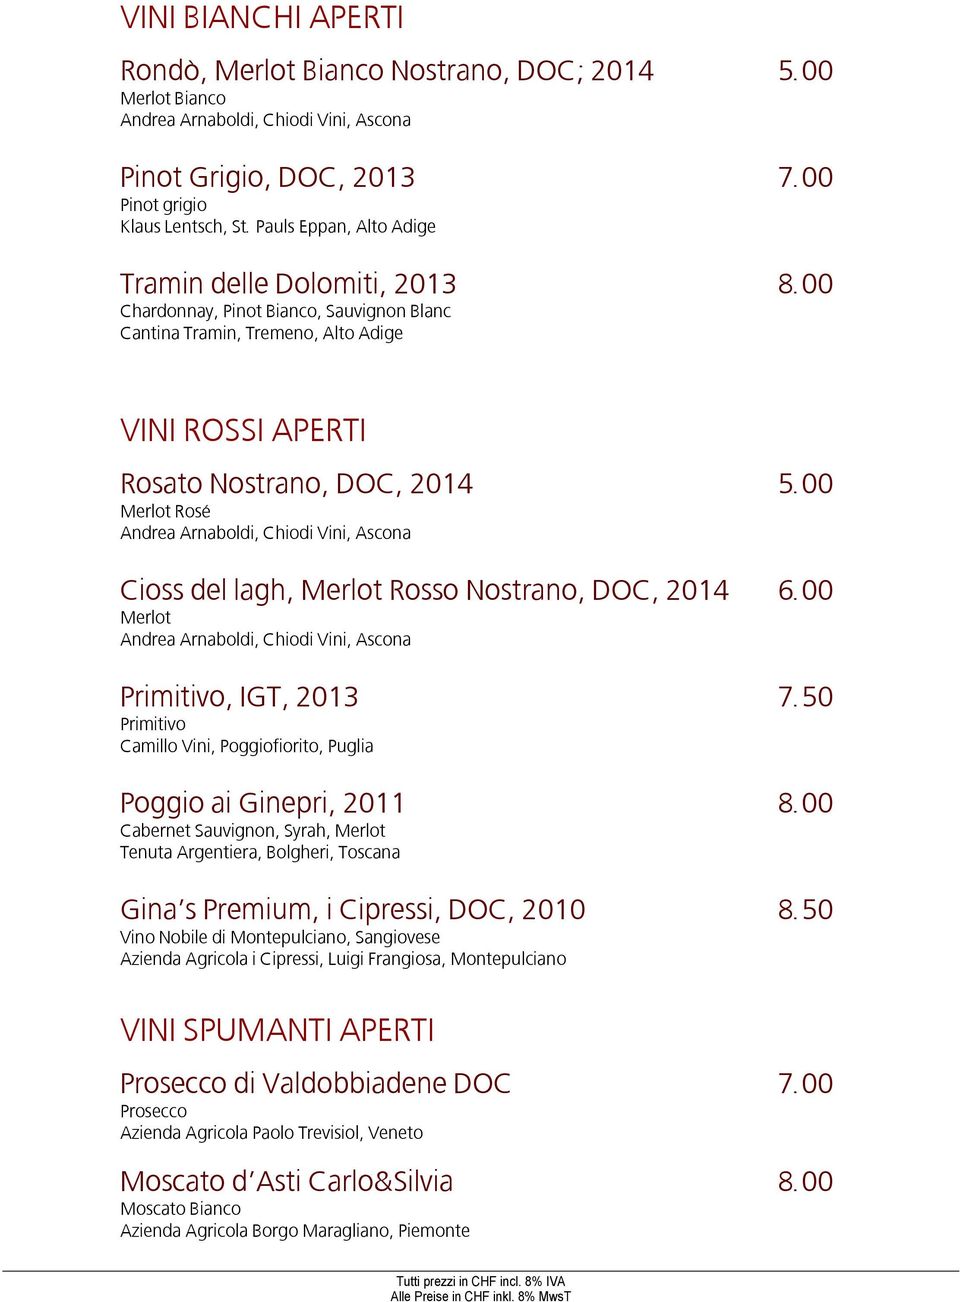 00 Rosé Andrea Arnaboldi, Chiodi Vini, Ascona Cioss del lagh, Rosso Nostrano, DOC, 2014 6.00 Andrea Arnaboldi, Chiodi Vini, Ascona Primitivo, IGT, 2013 7.